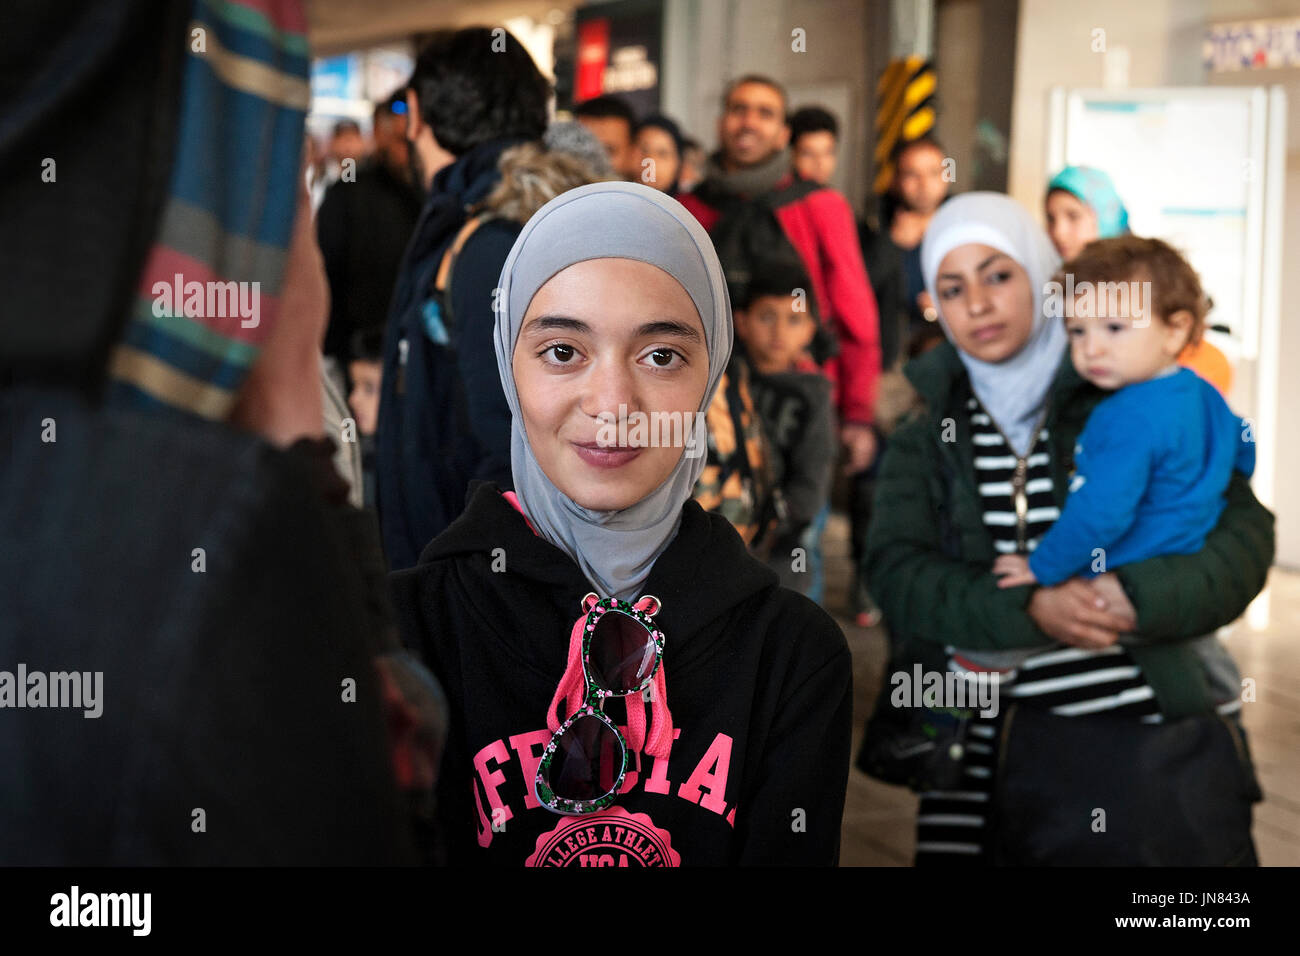 München, Deutschland - 8. September 2015: Flüchtlinge aus Syrien, Afghanistan und Irak auf dem Hauptbahnhof in München anreisen, Asyl in Europa zu suchen. Stockfoto